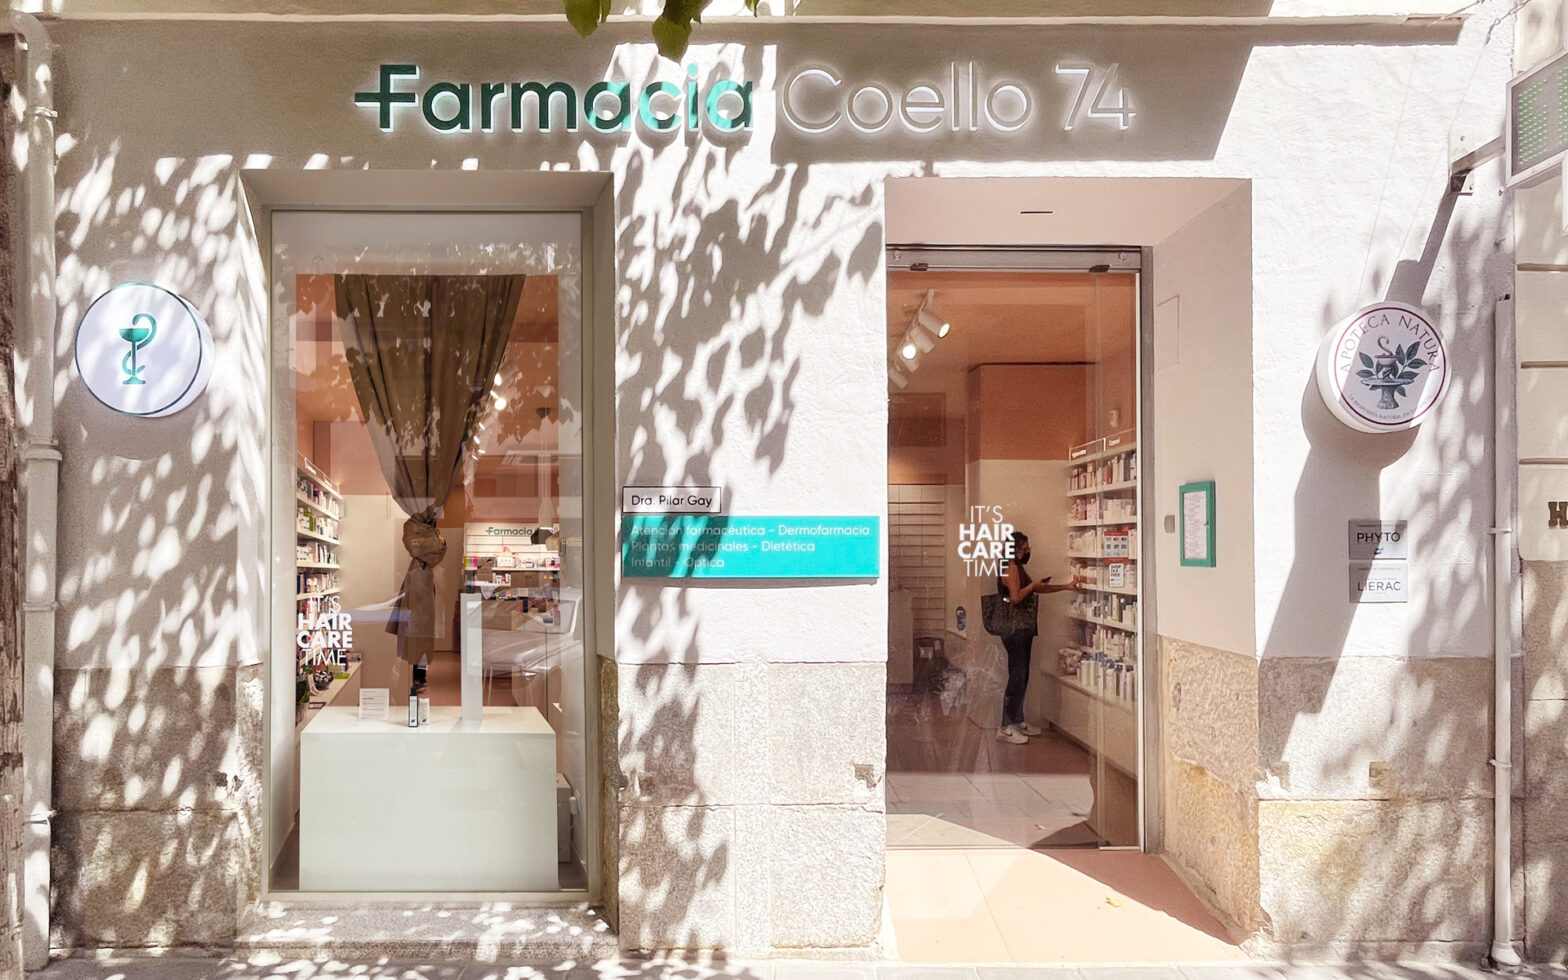 Interior design for Farmacia Coello 74, facade with autumn display "It's Hair Care Time".